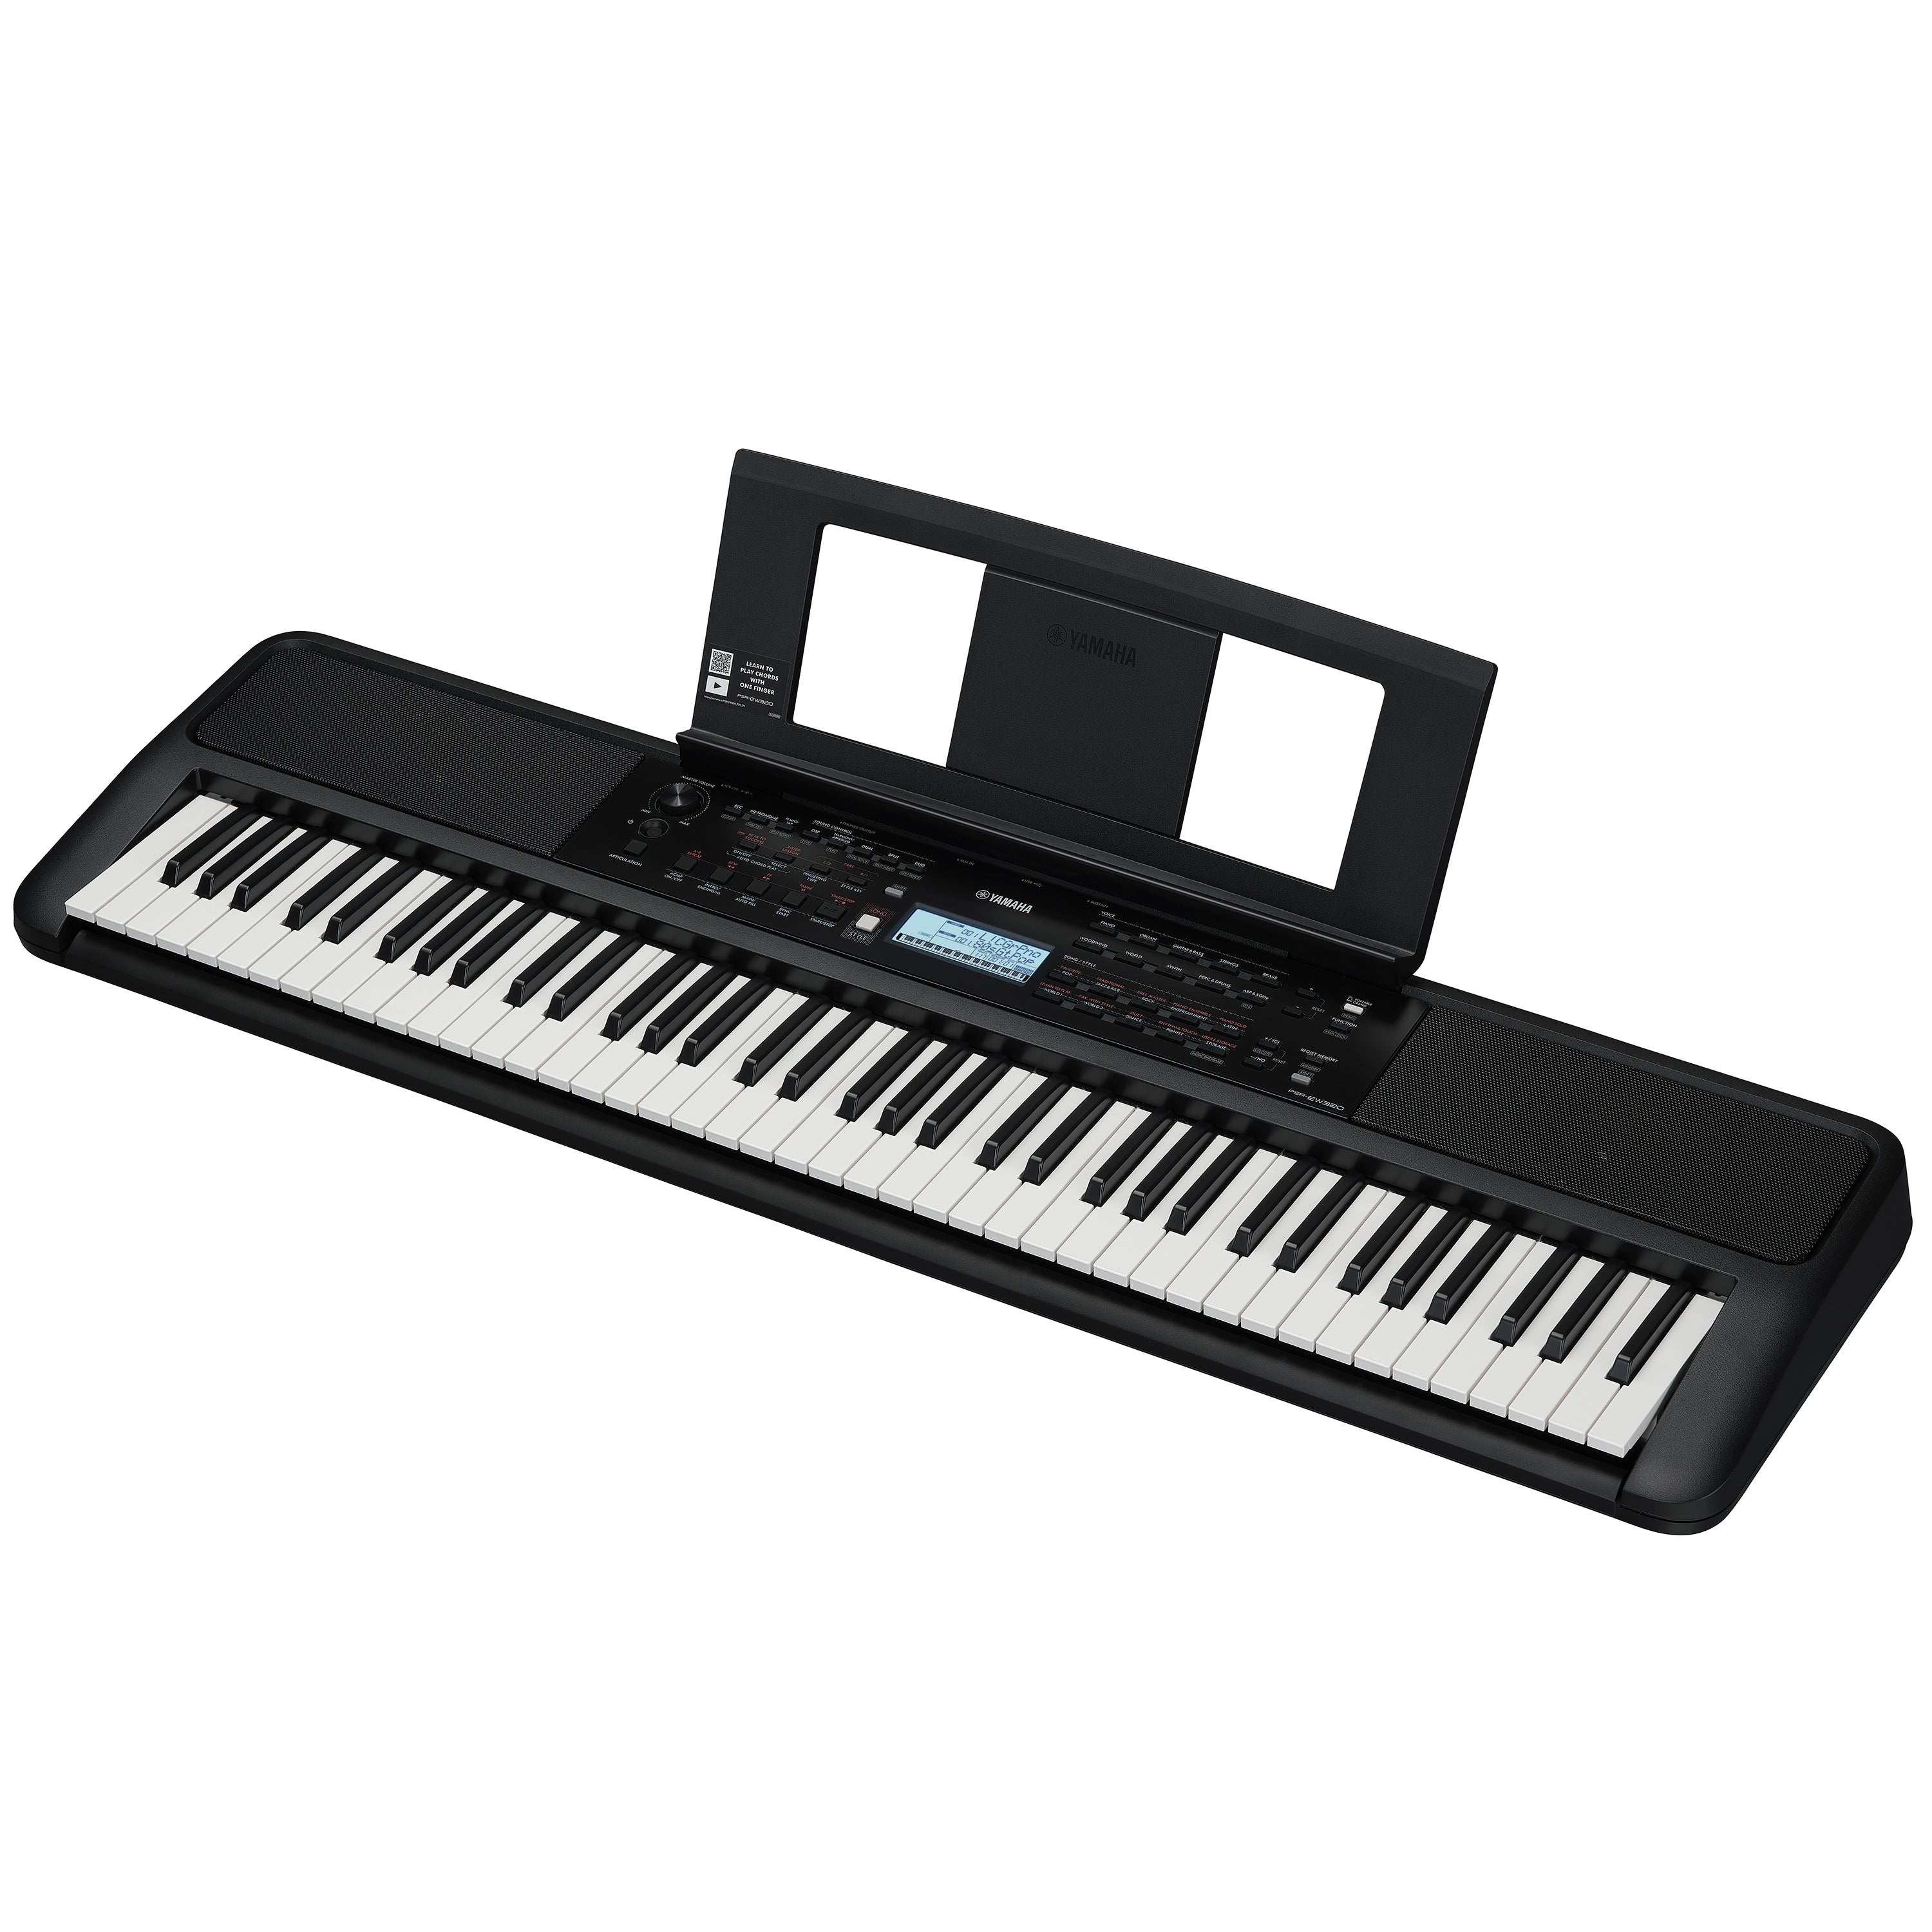 Yamaha PSRE320 Portable Keyboard, View 1